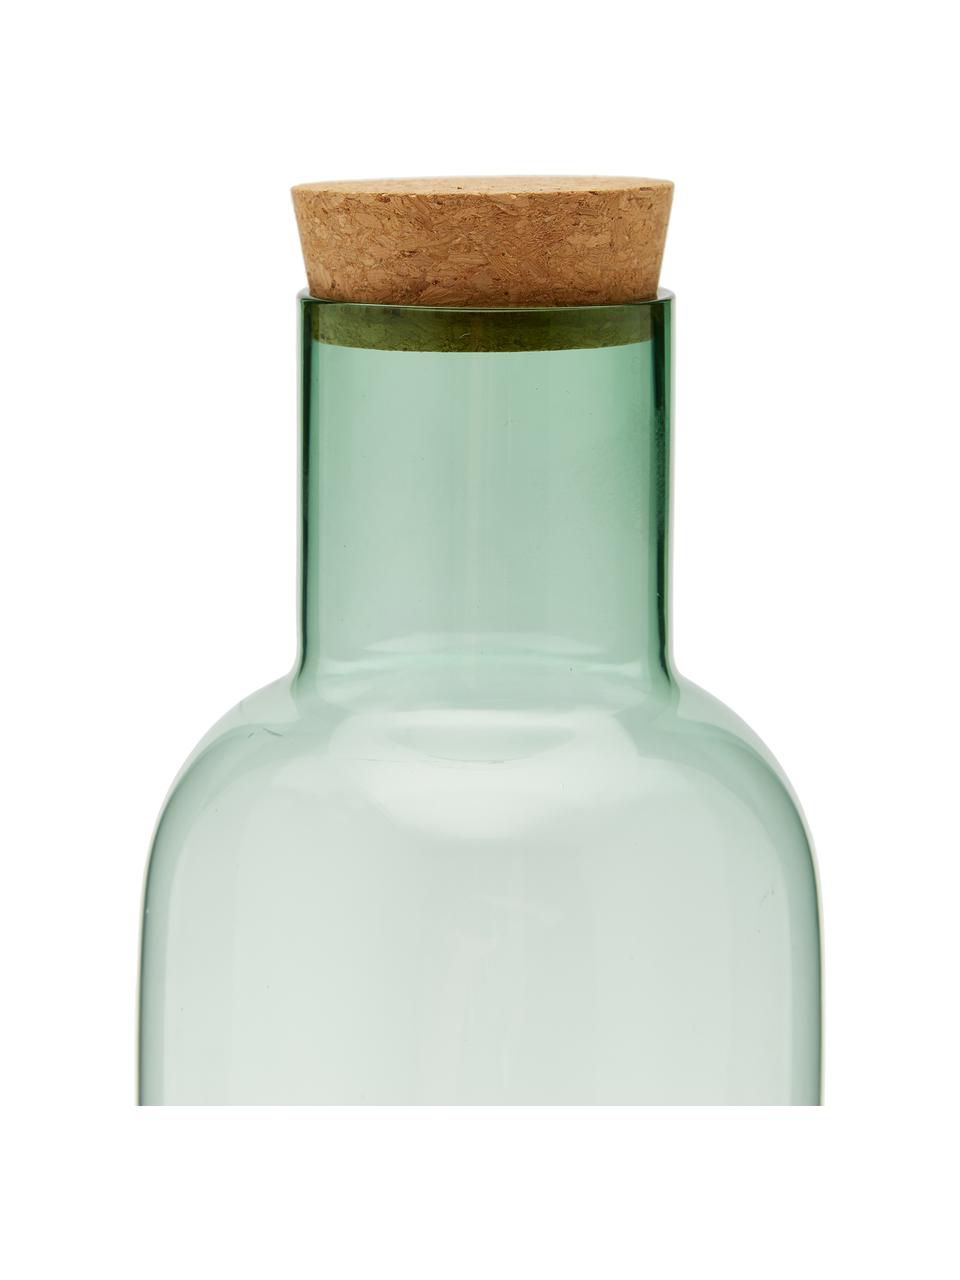 Carafe verre avec bouchon Clearance, 1 l, Vert, transparent, haut. 25 cm, 1 l